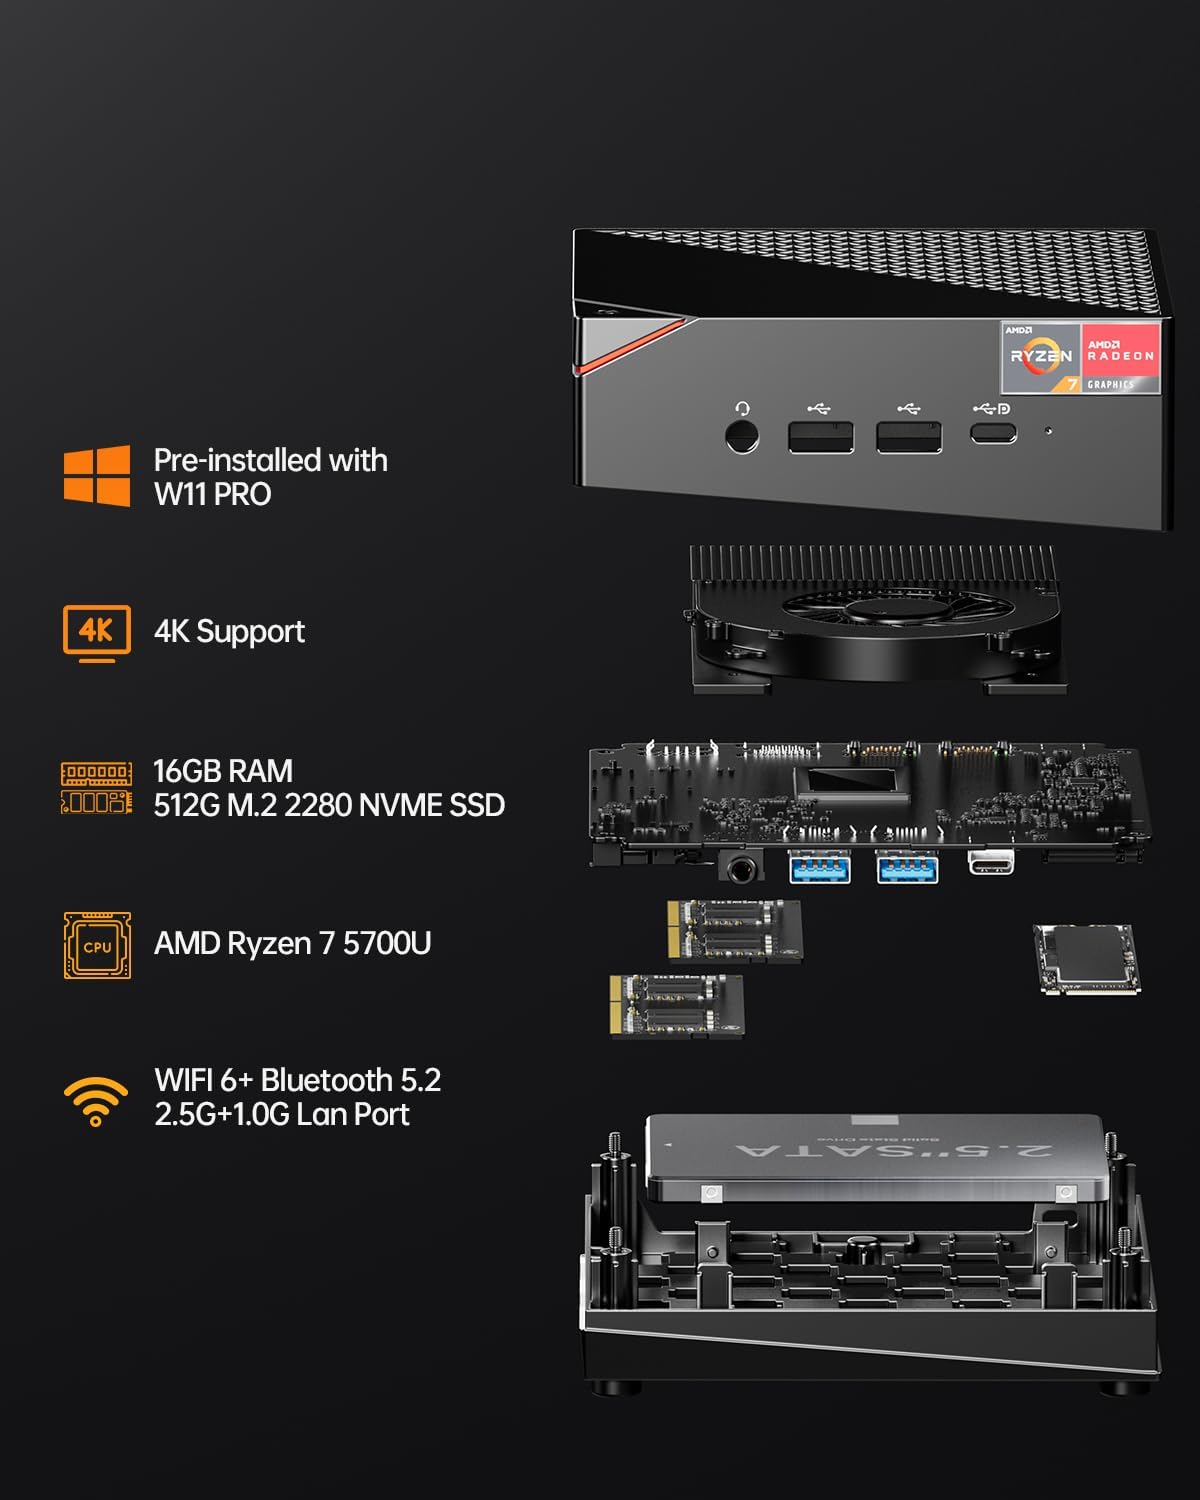 AOOSTAR MN57 Mini PC AMD Ryzen 7 5700U 8C/16T，Mini Computer Windows 11 Pro with 32GB DDR4 1T NVMe M.2 SSD，Mini Desktop PC Support 2.5G RJ45 4K Triple Display/BT 5.2/WiFi 6